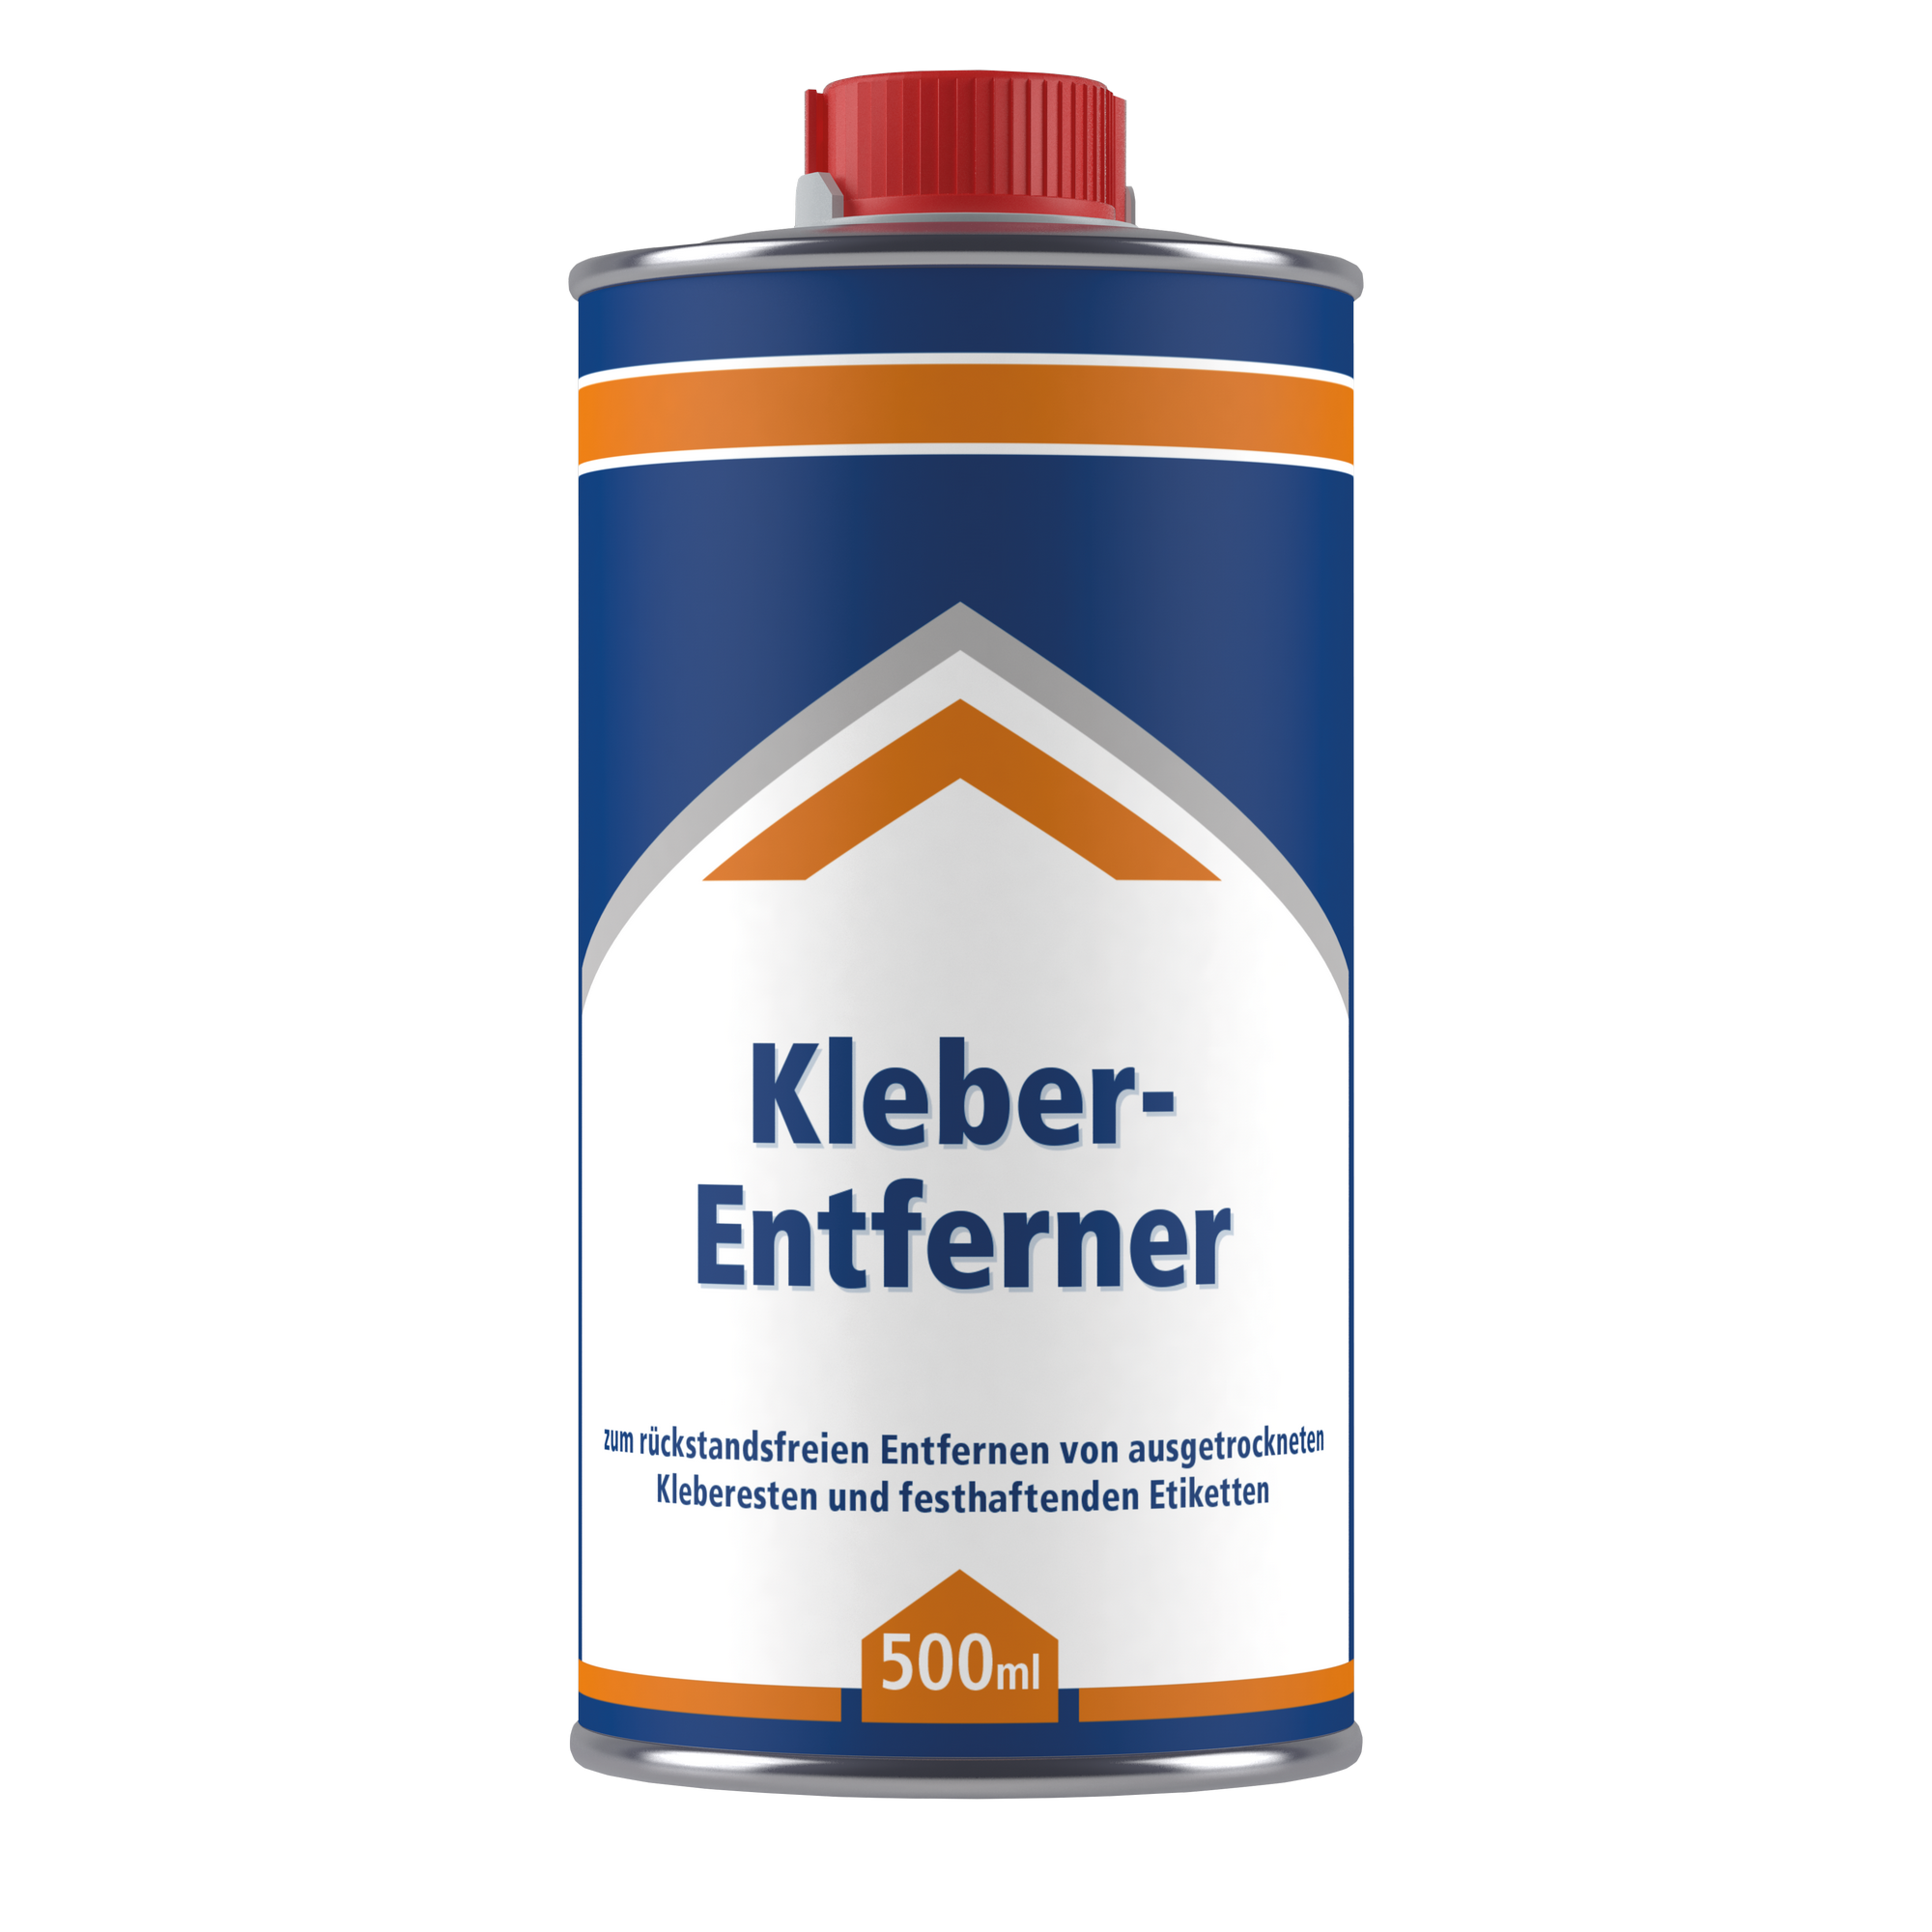 Kleberentferner 0,5 l + product picture